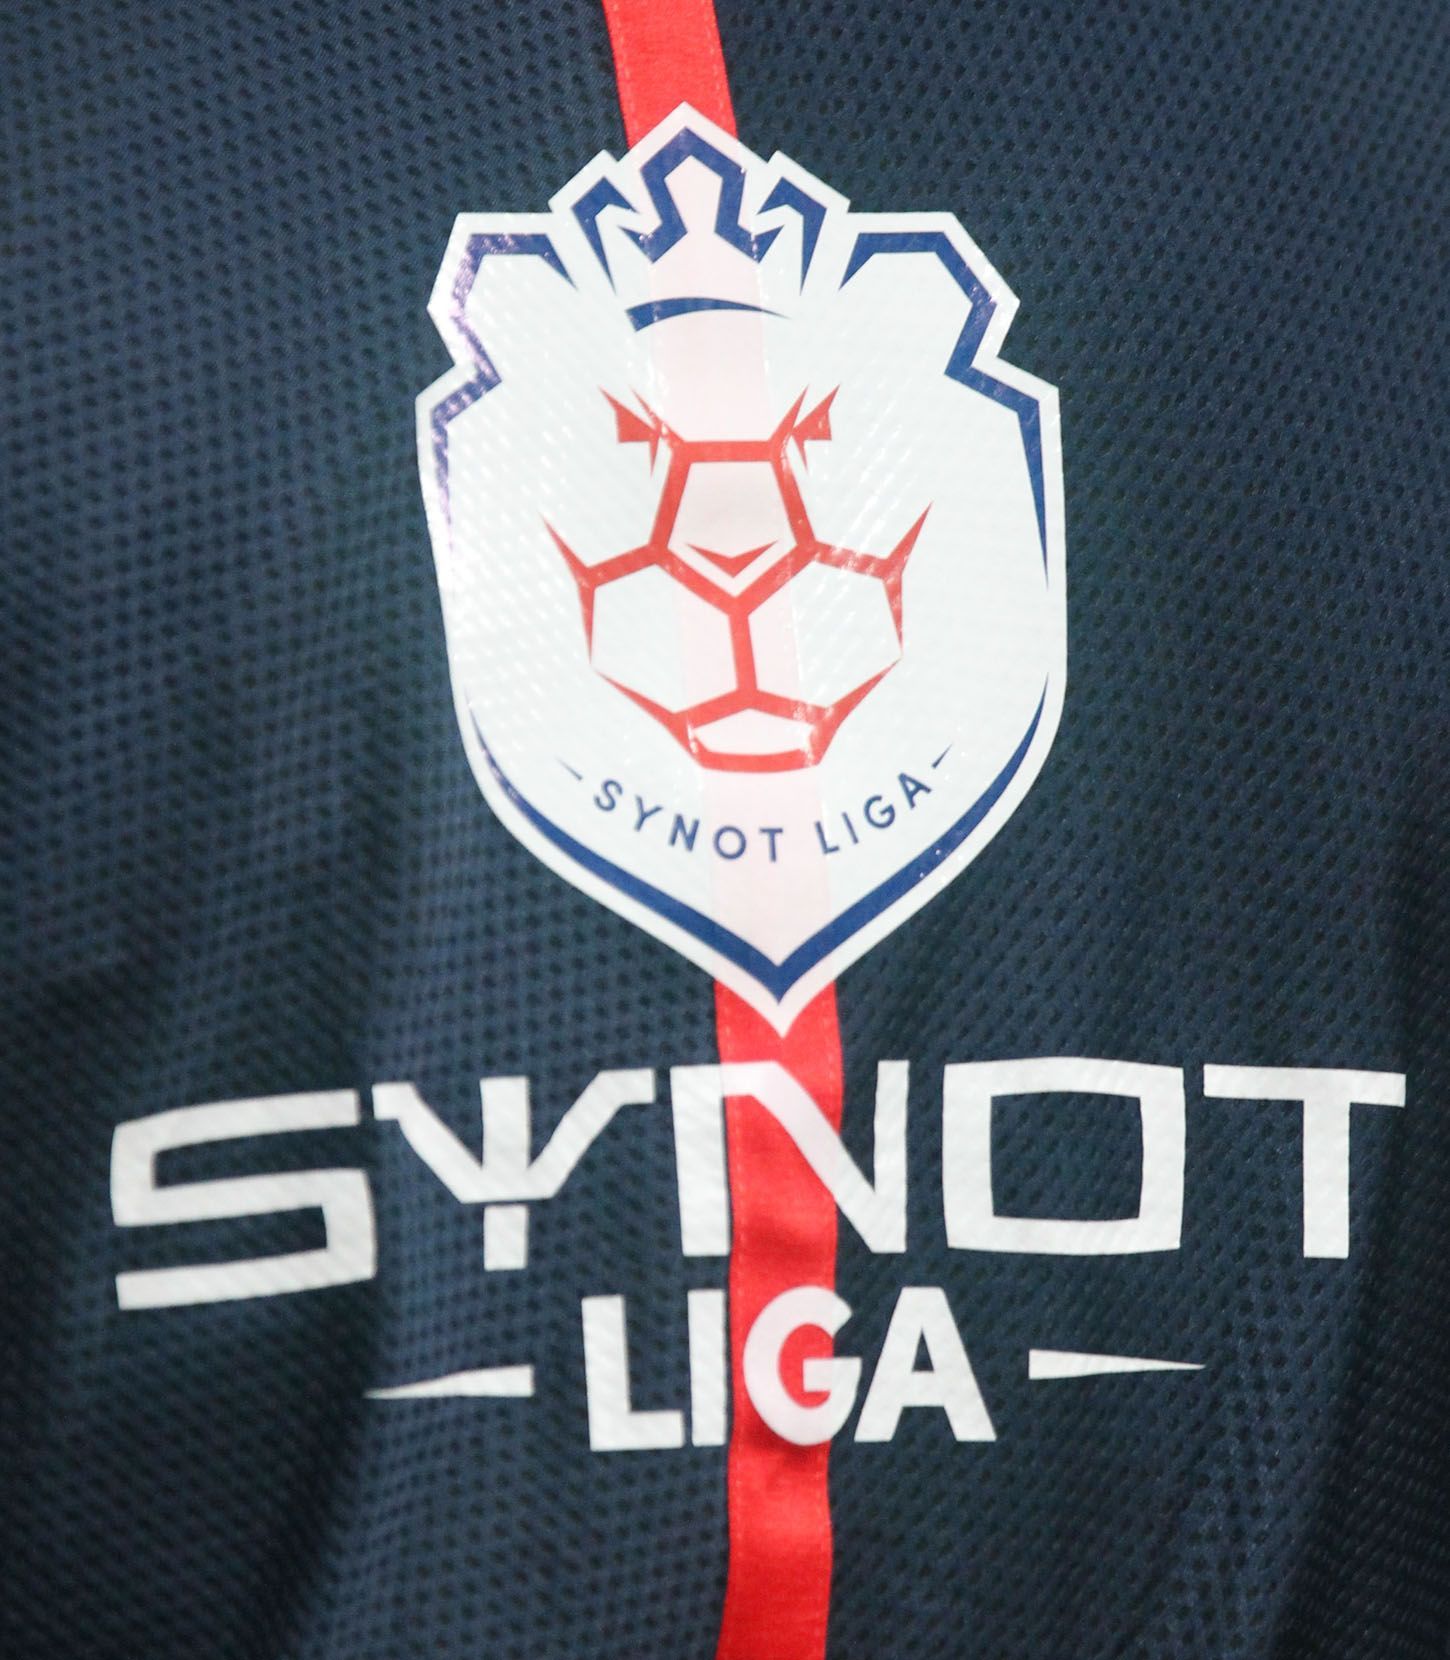 Dukla vs. Sparta, utkání Synot ligy (Synot liga znak logo)